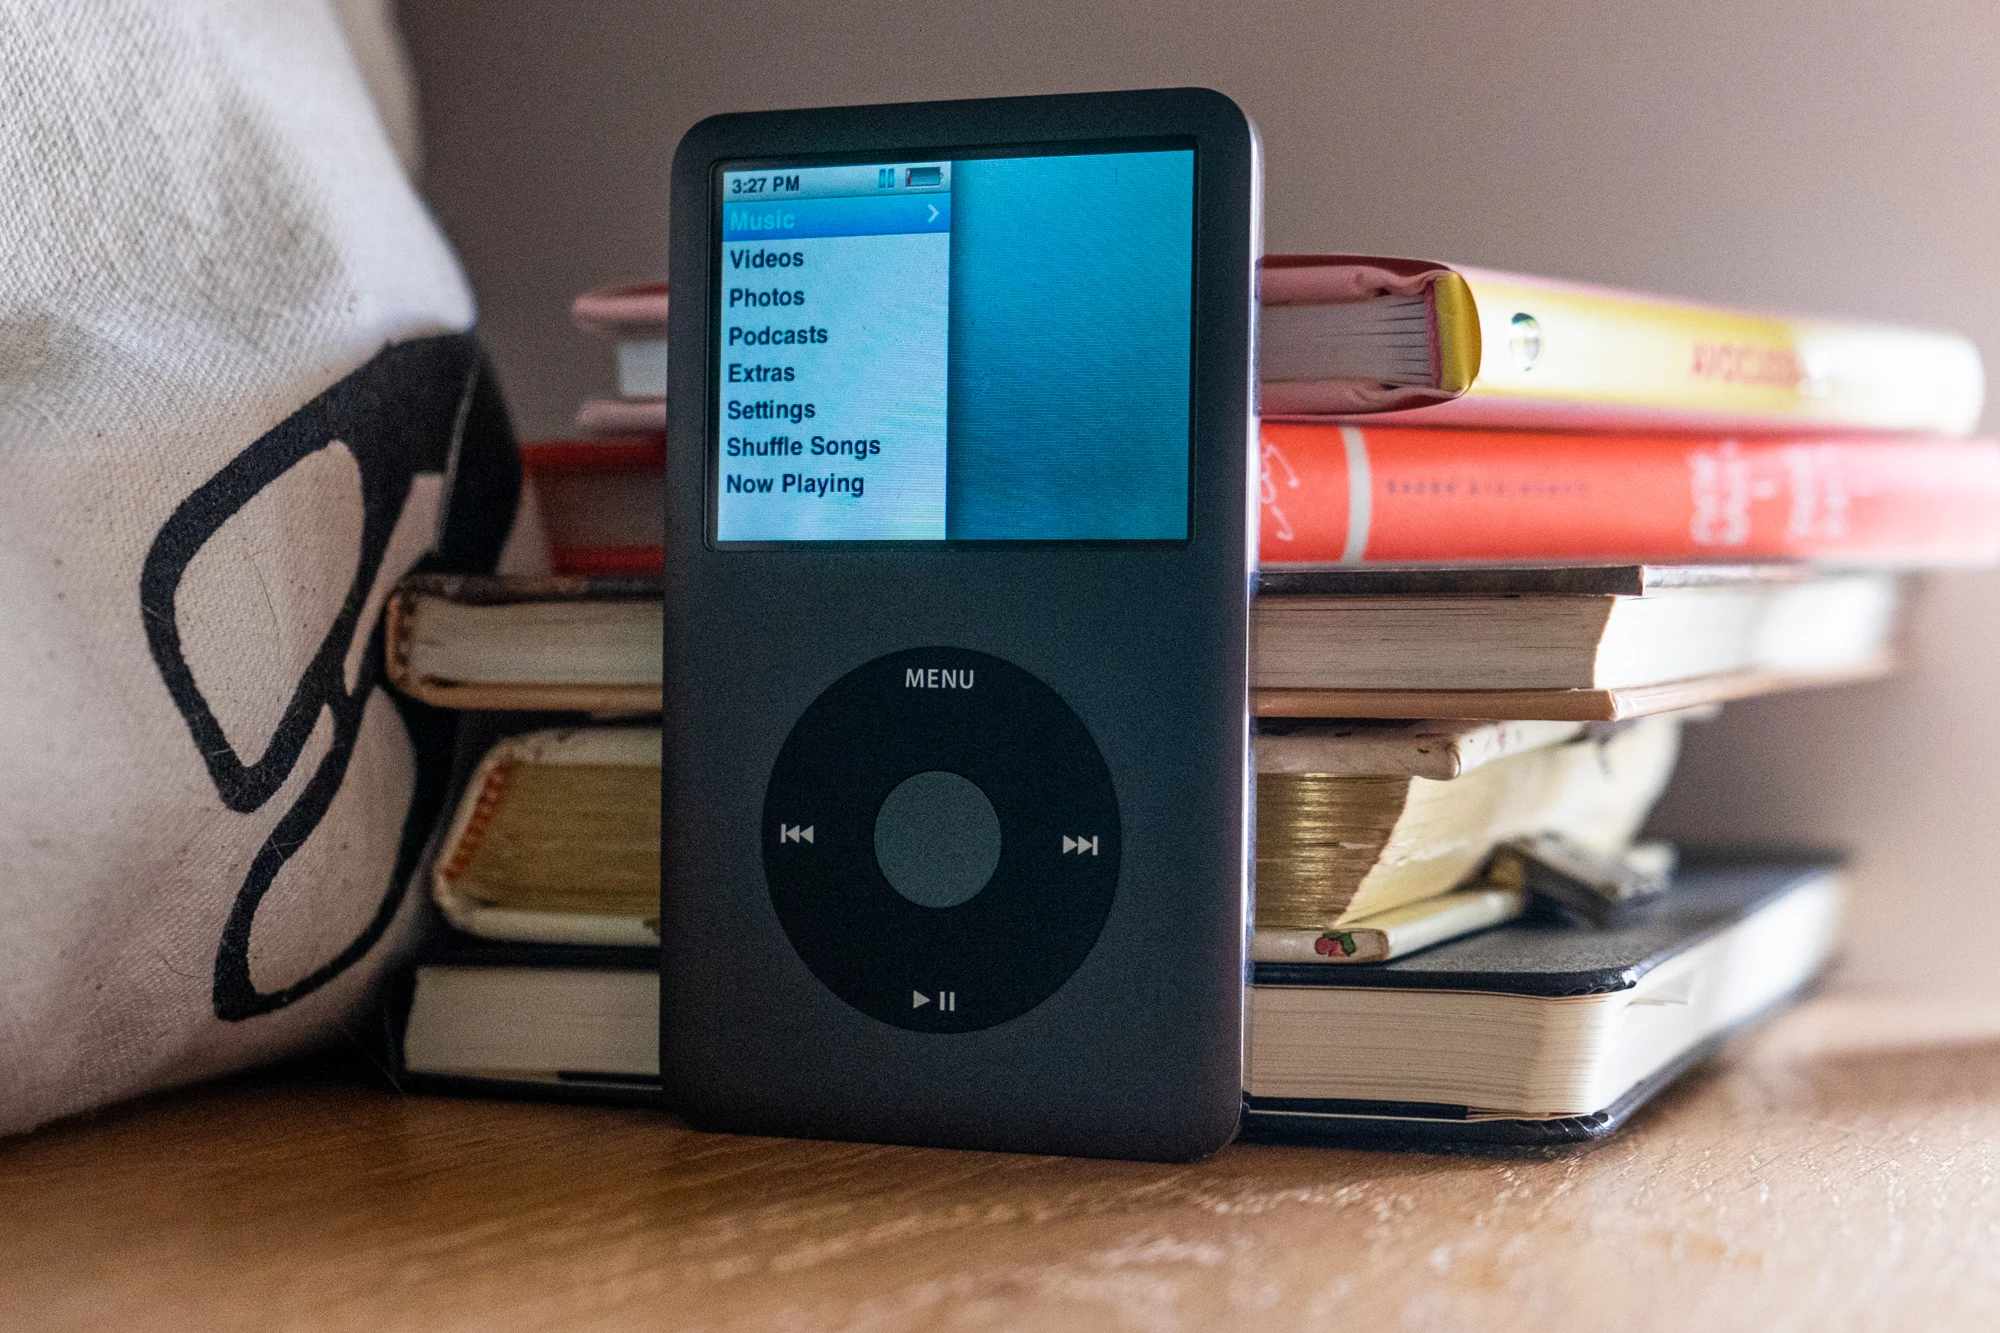 初代iPod発表から20周年。生みの親、「ジョブズが守った約束」を語る